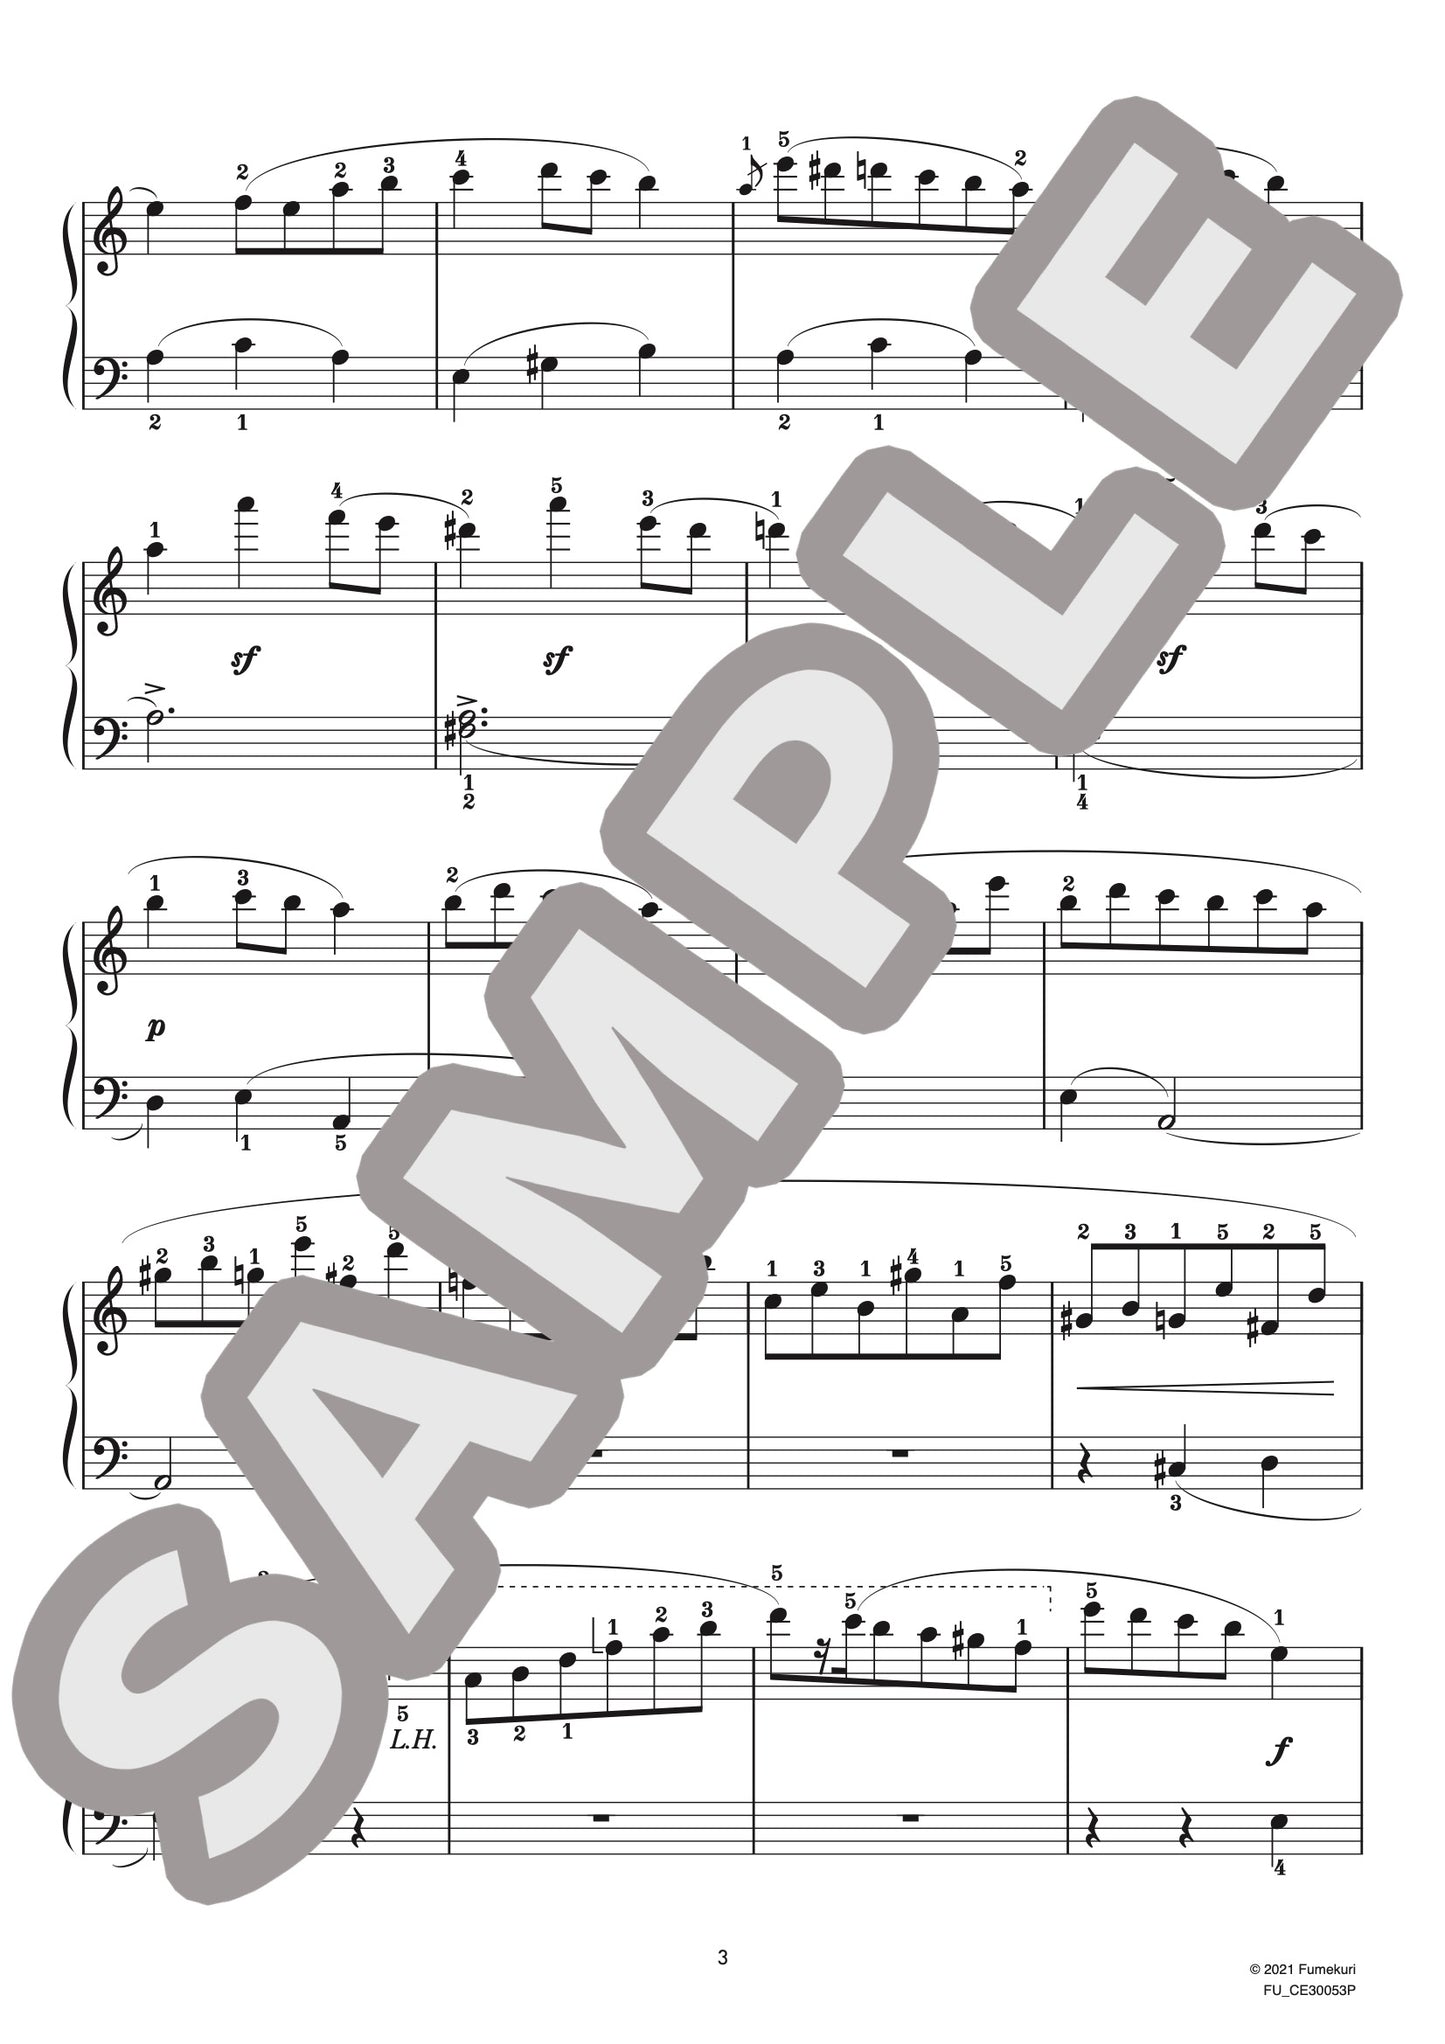 ピアノ協奏曲 第2番 第3楽章（フレデリック・ショパン) / クラシック・オリジナル楽曲【初級】